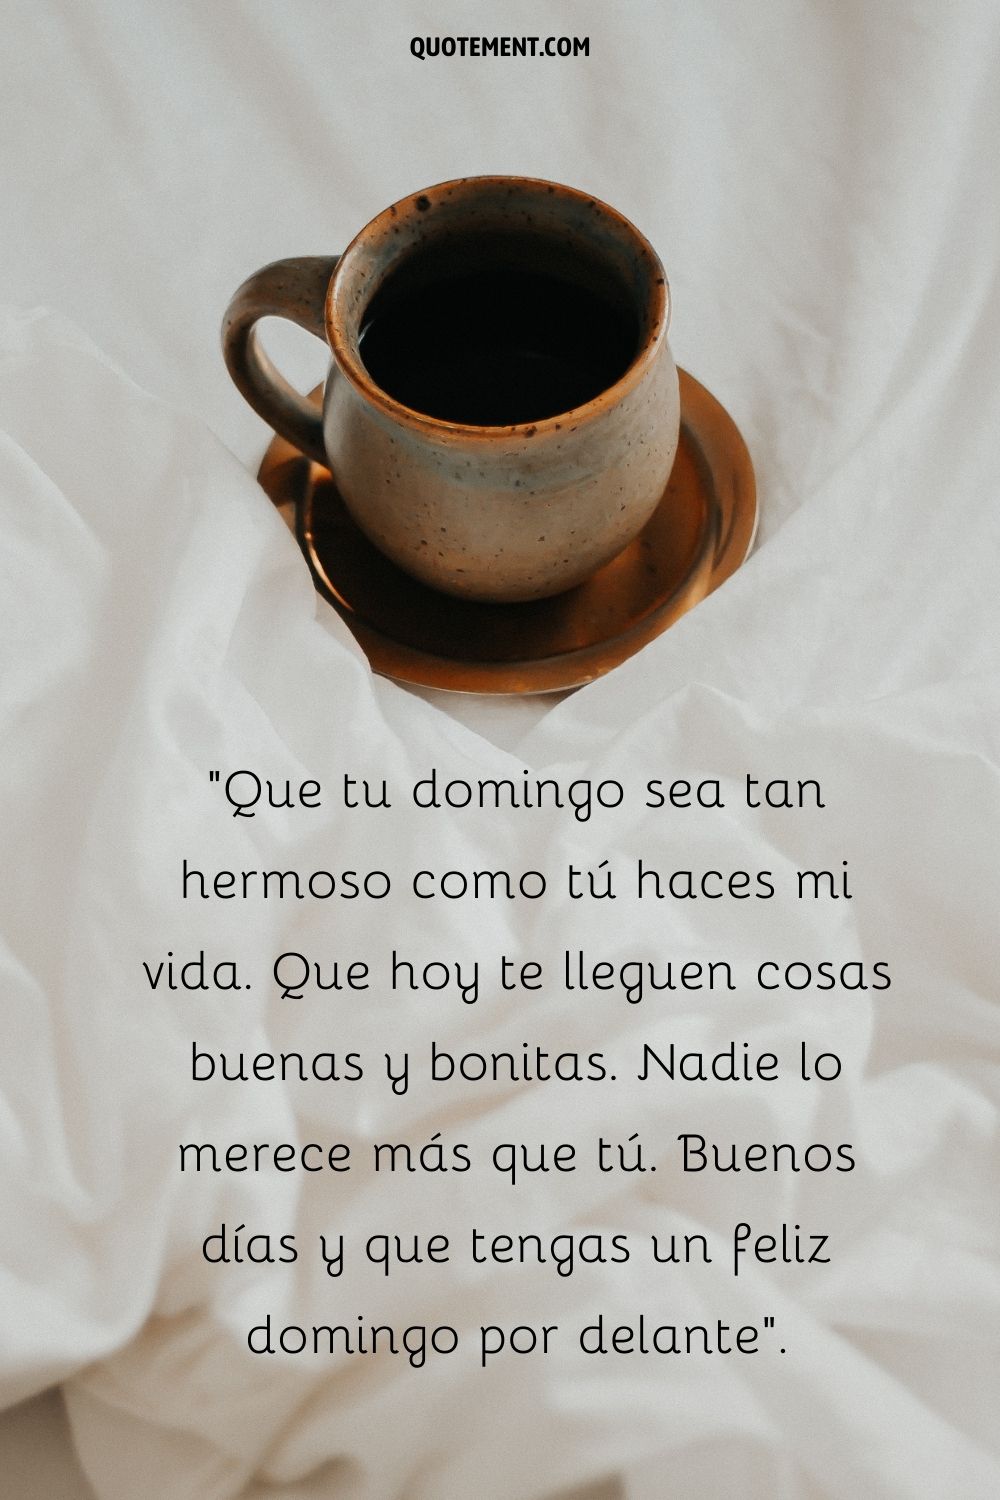 una taza de café marrón sobre las sábanas que representa good morning happy sunday quote